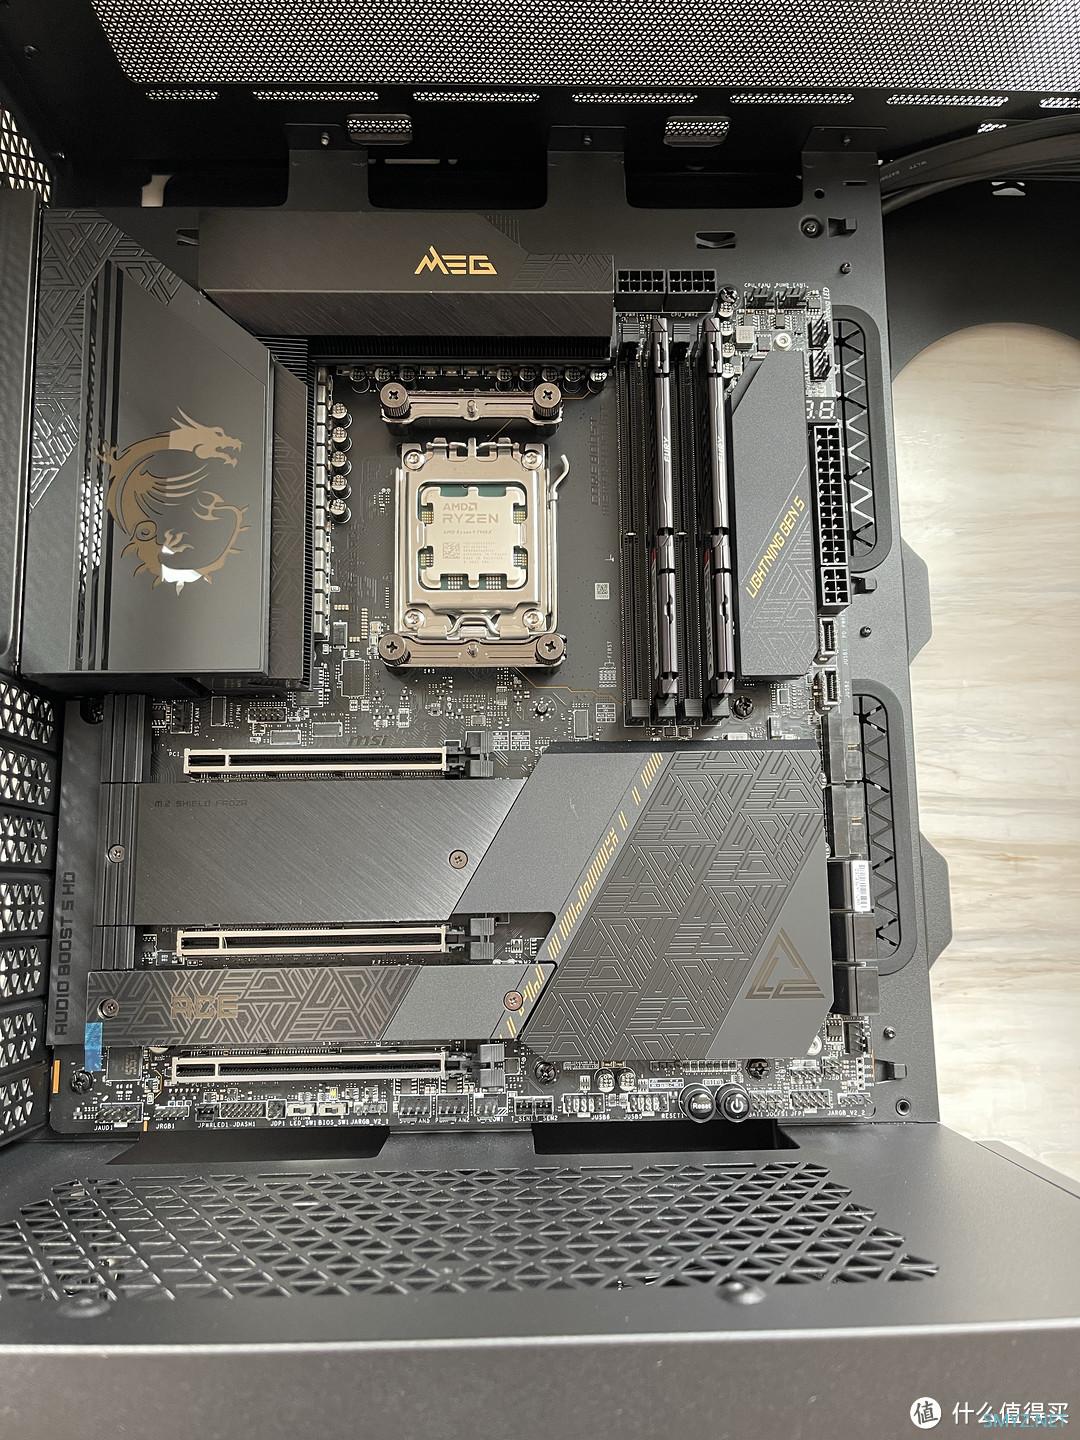 AMD YES—次旗舰7900x+微星X670E战神的攒机行动